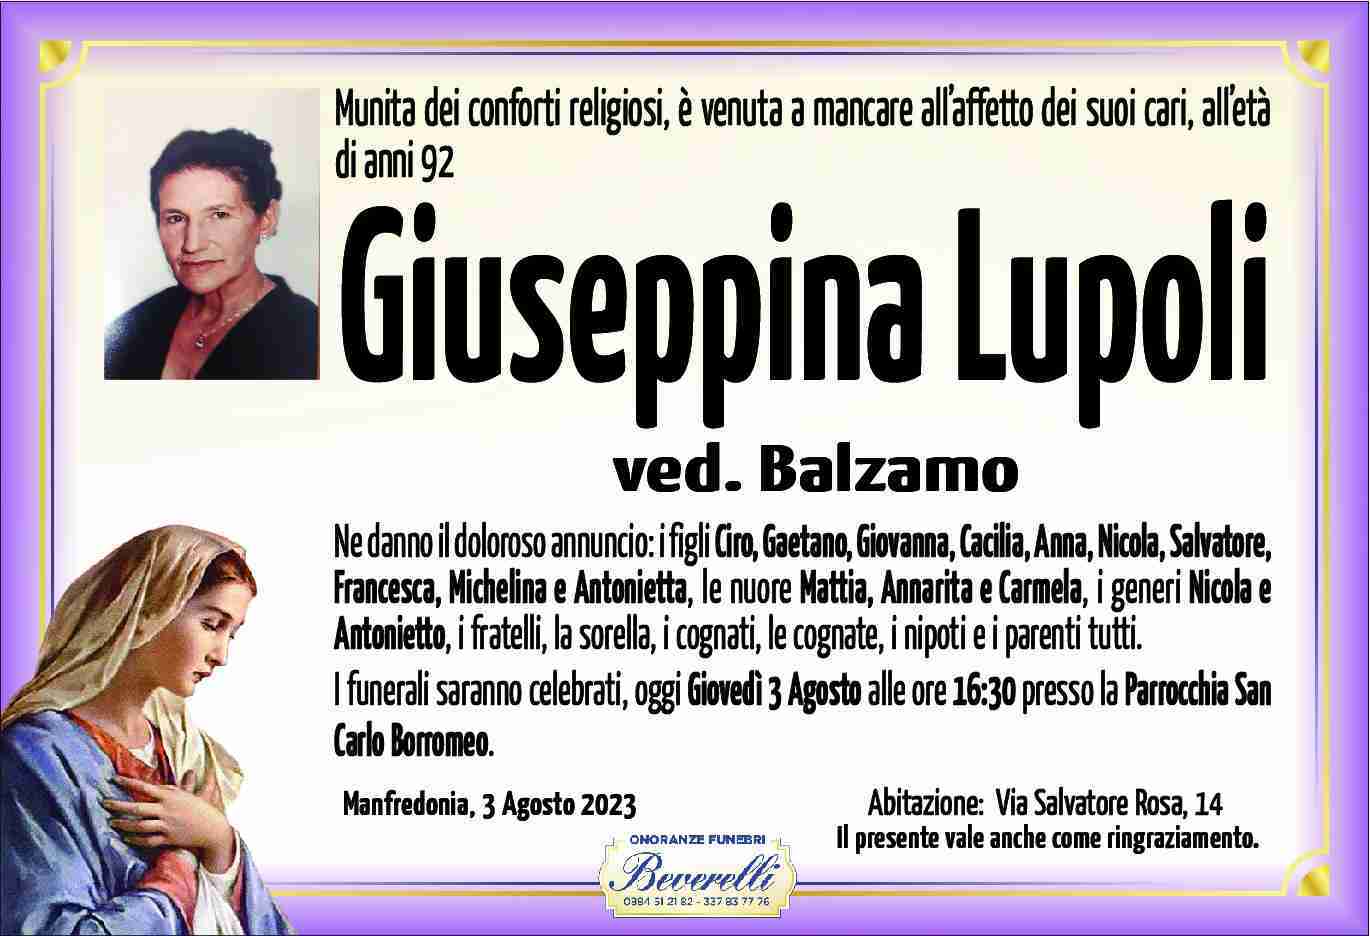 Giuseppina Lupoli